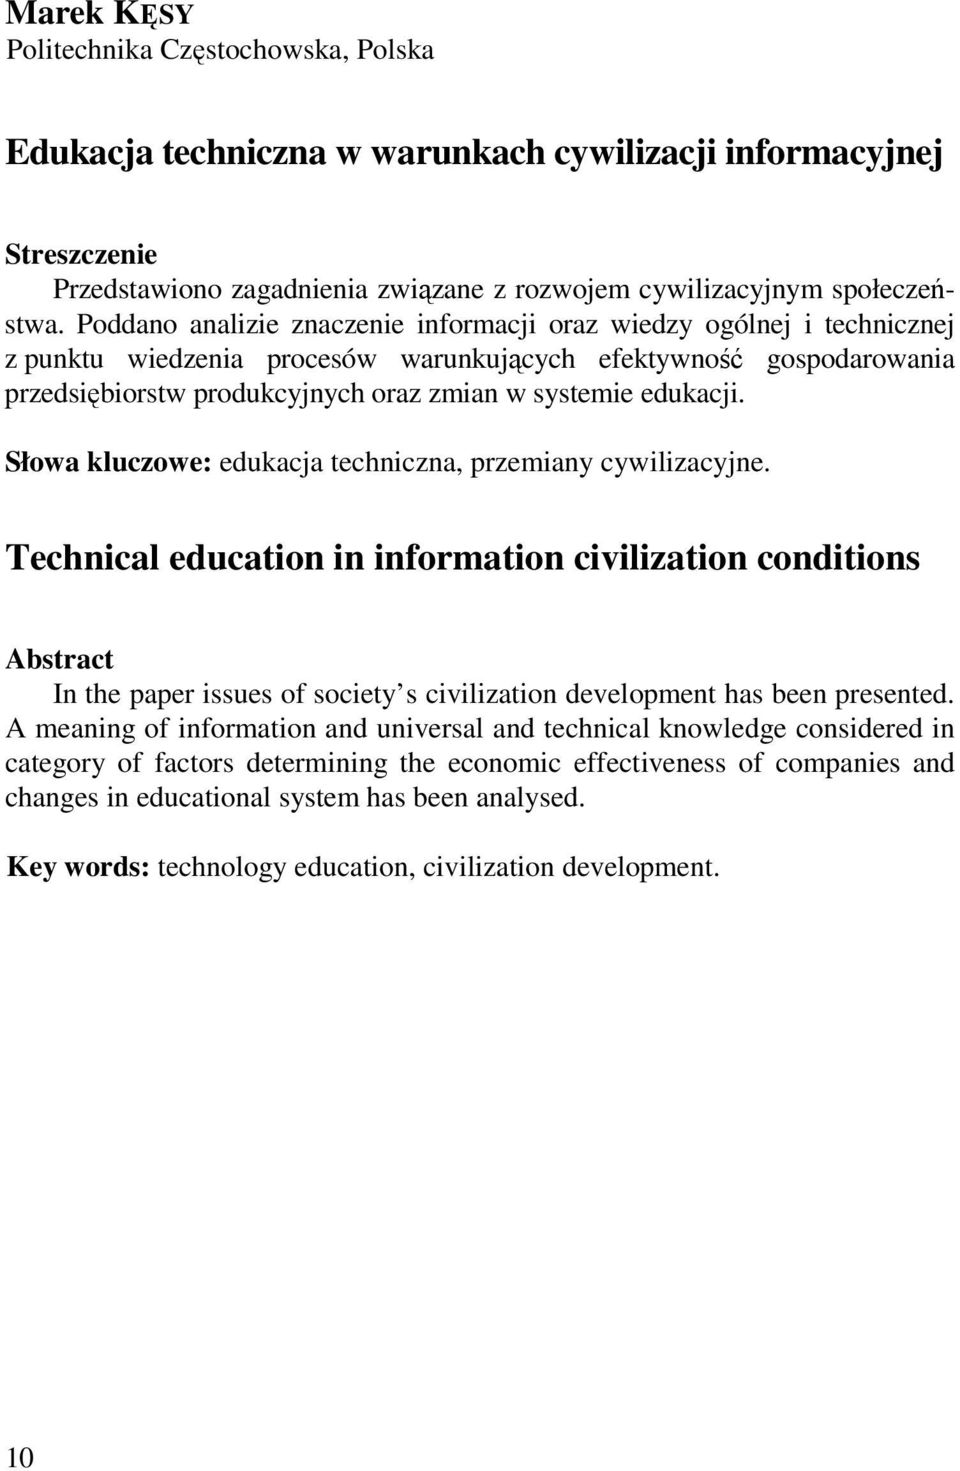 edukacji. Słowa kluczowe: edukacja techniczna, przemiany cywilizacyjne.